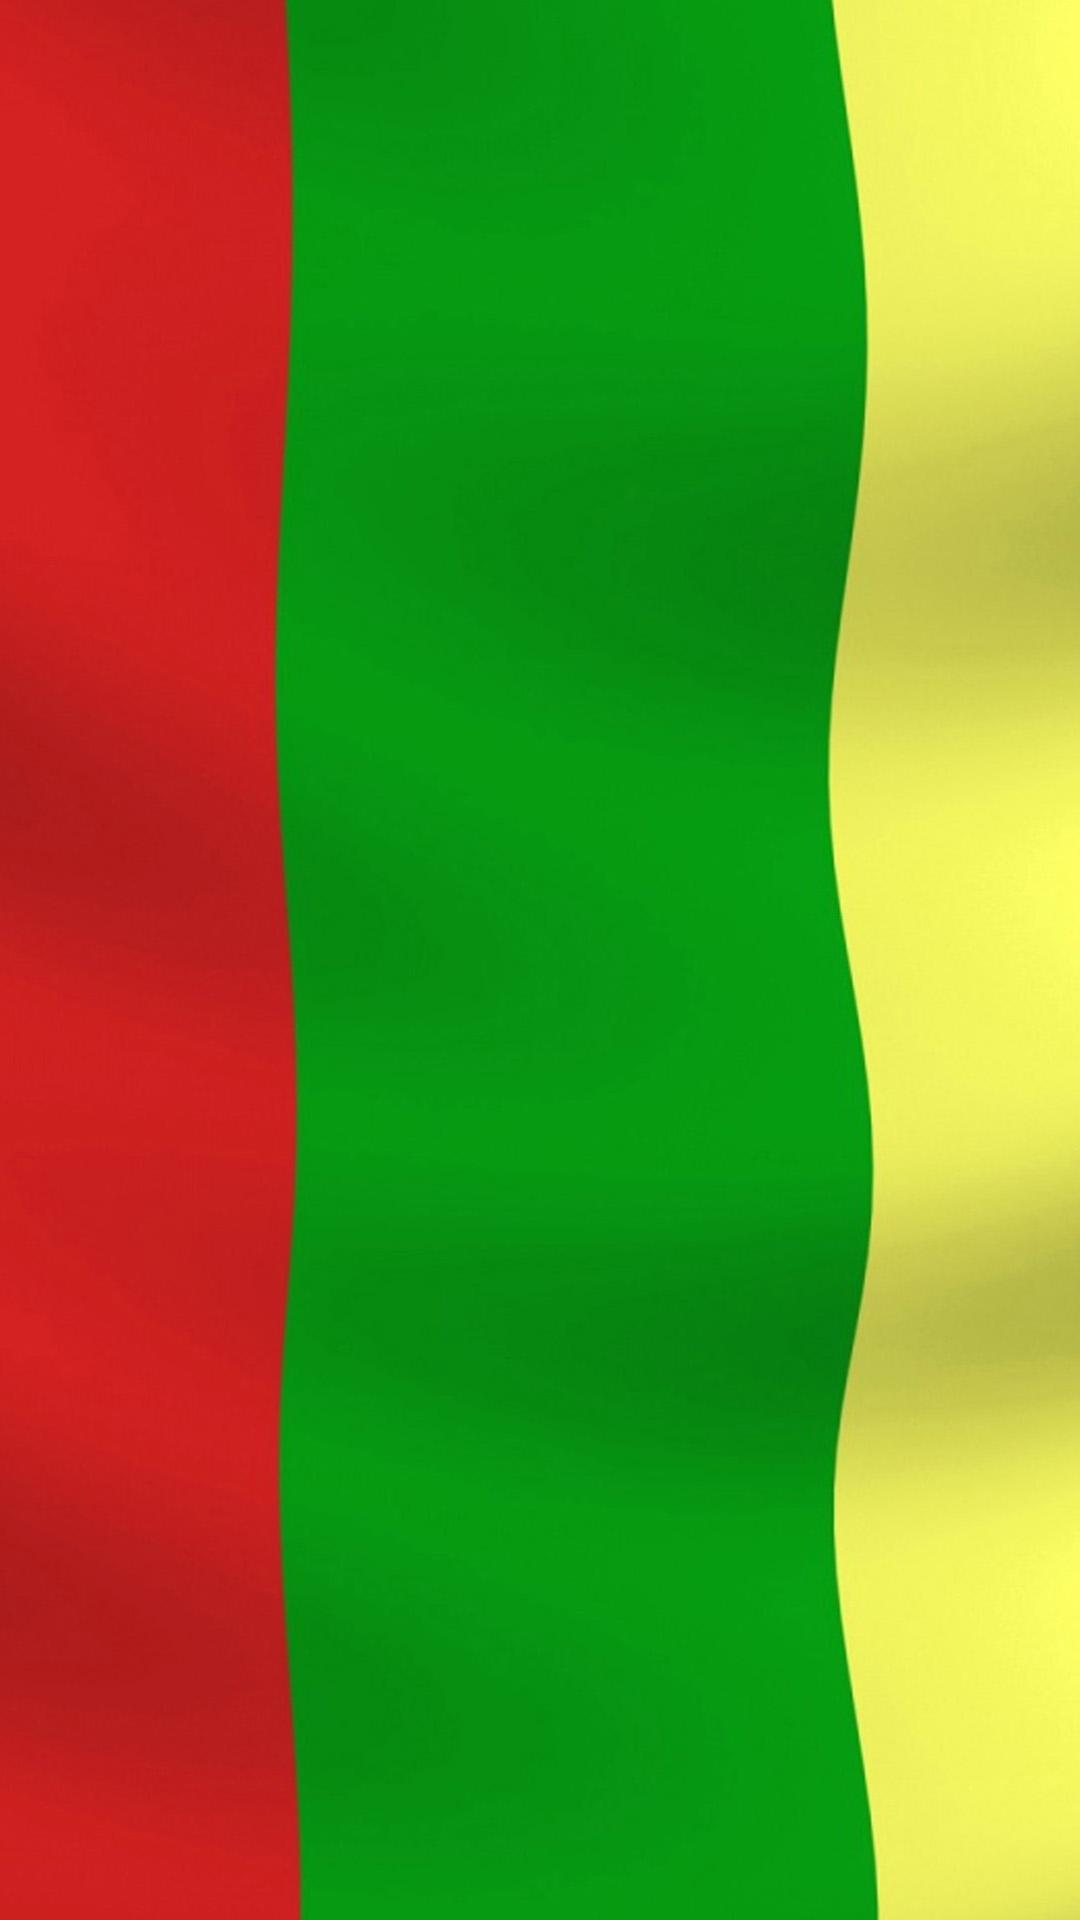 Lithuania Flag Wallpaper ⋆ GetPhotos